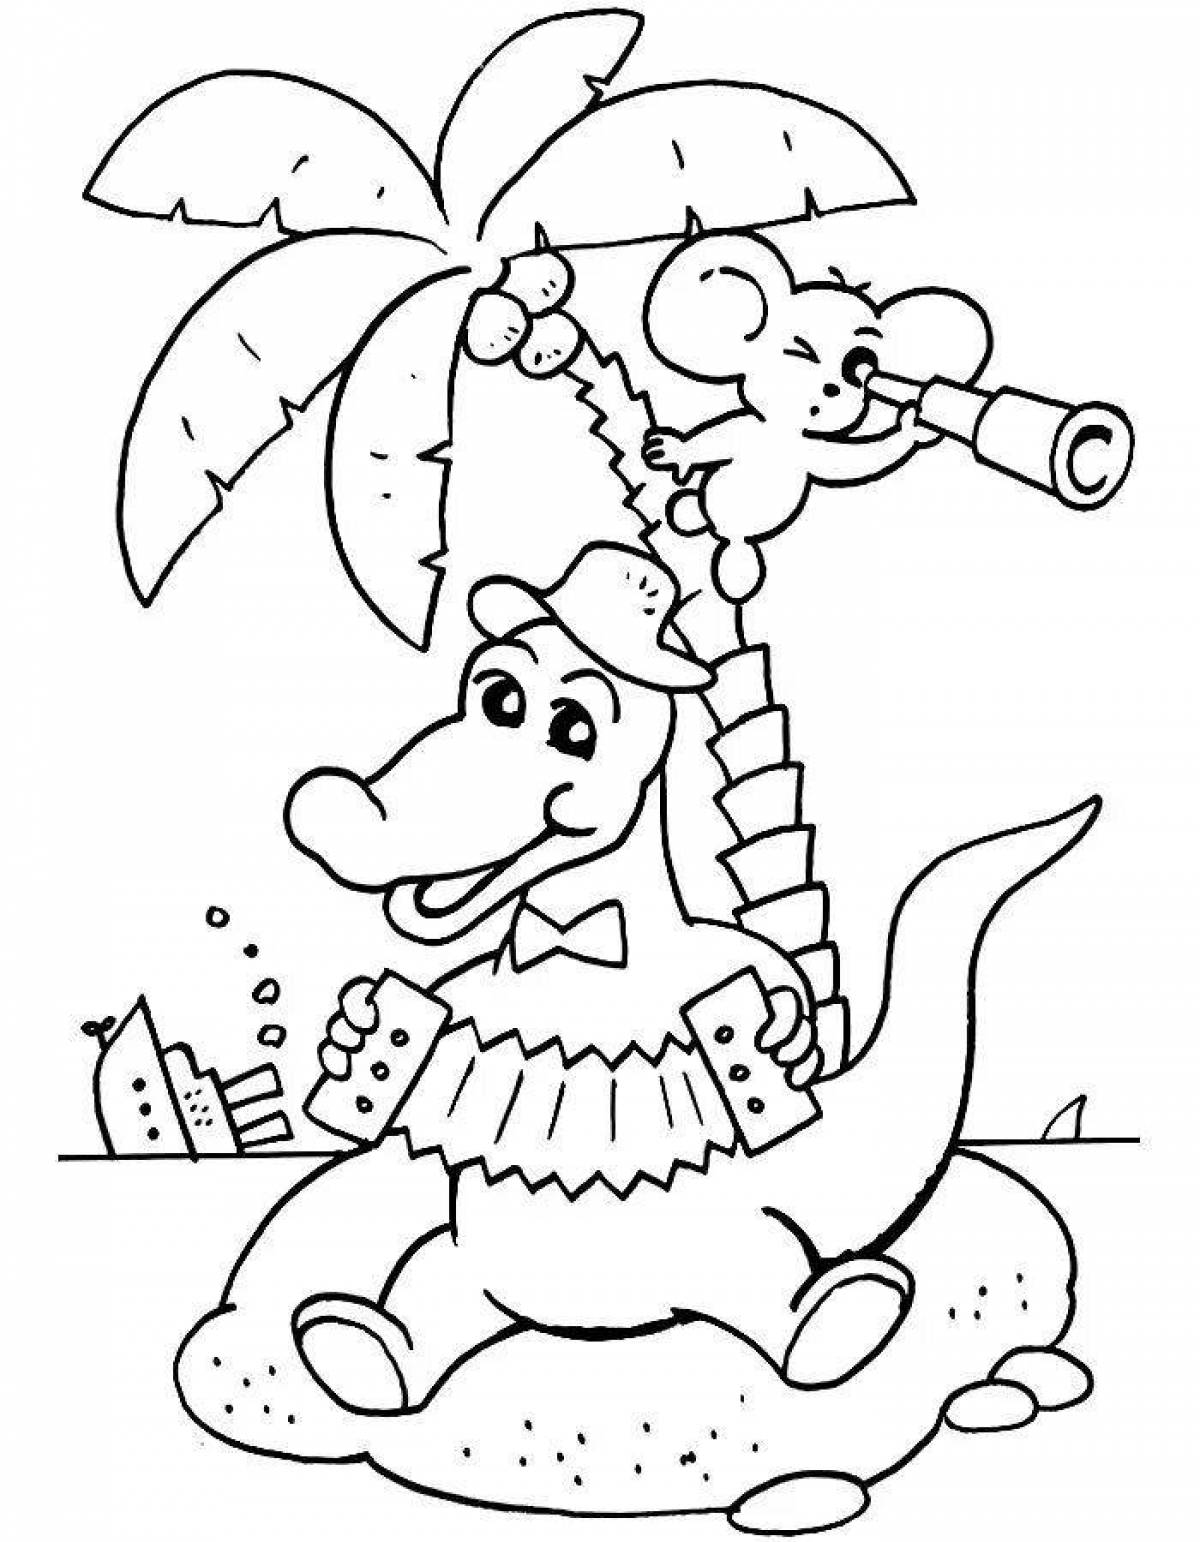 Coloring page wonderful cheburashka and crocodile gene